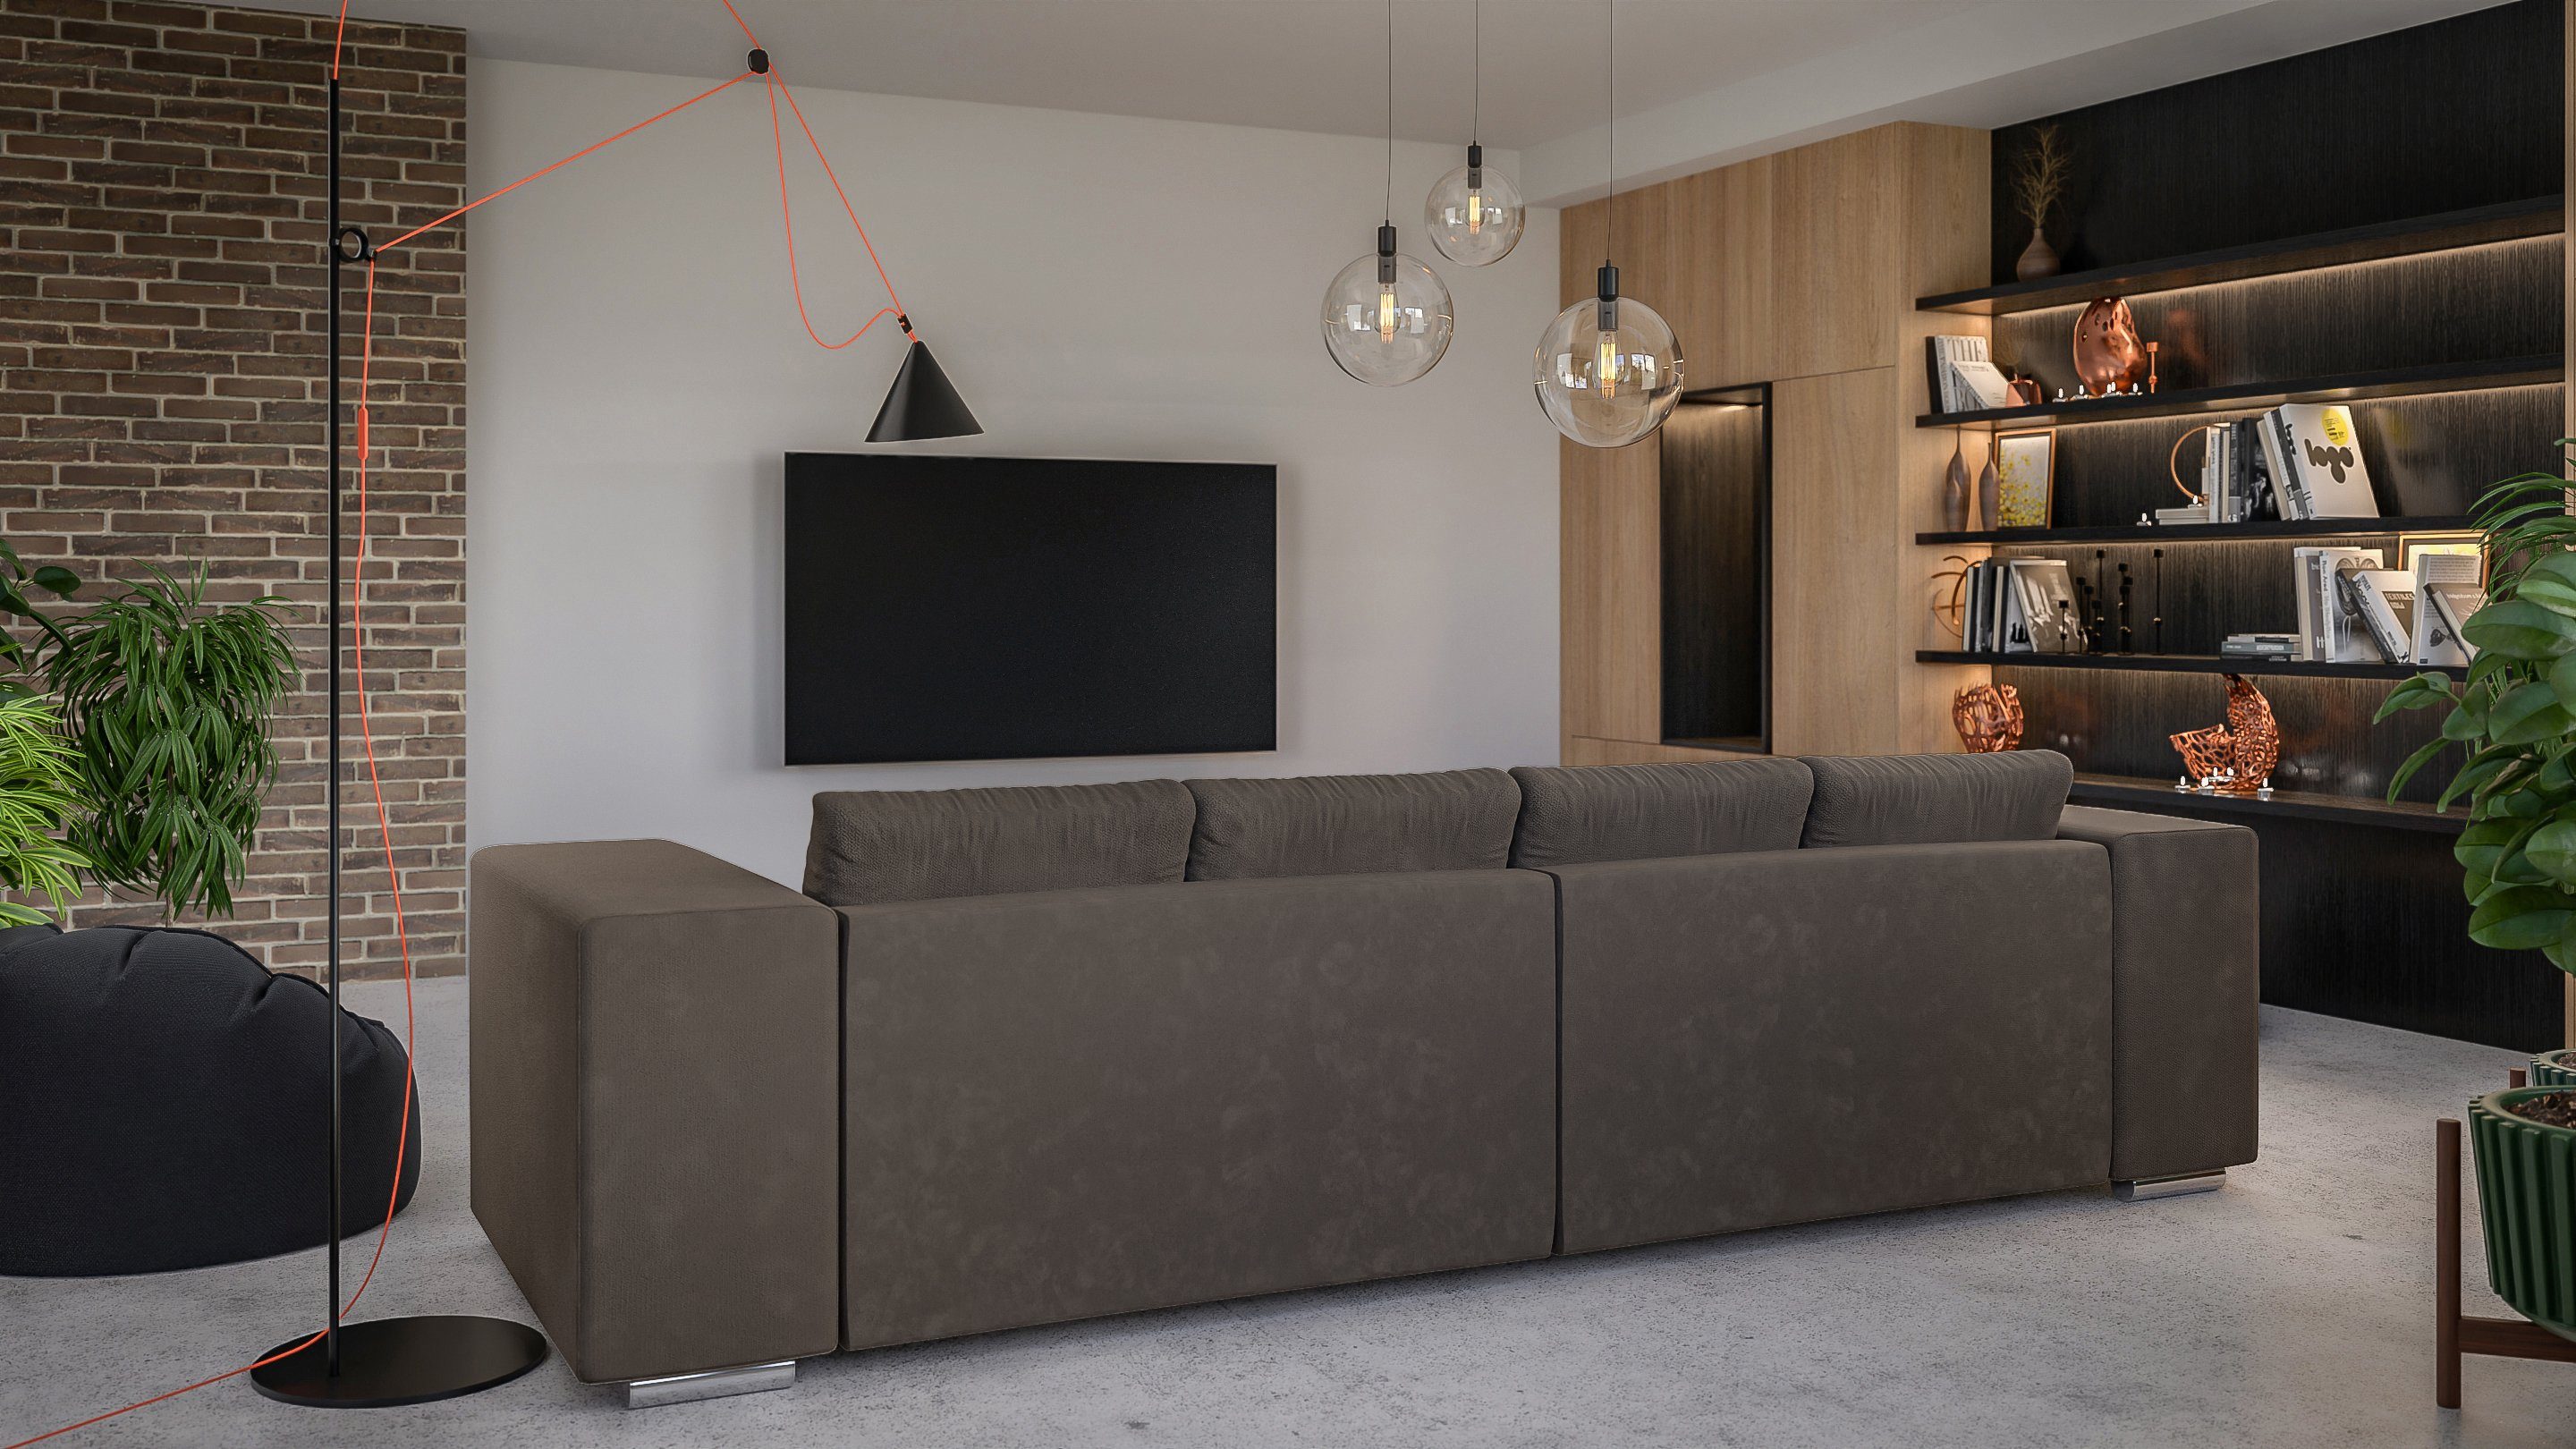 Big-Sofa 5-Sitzer mit S-Style Braun Cork Wellenfederung mit Khaki Schlaffunktion, Möbel -